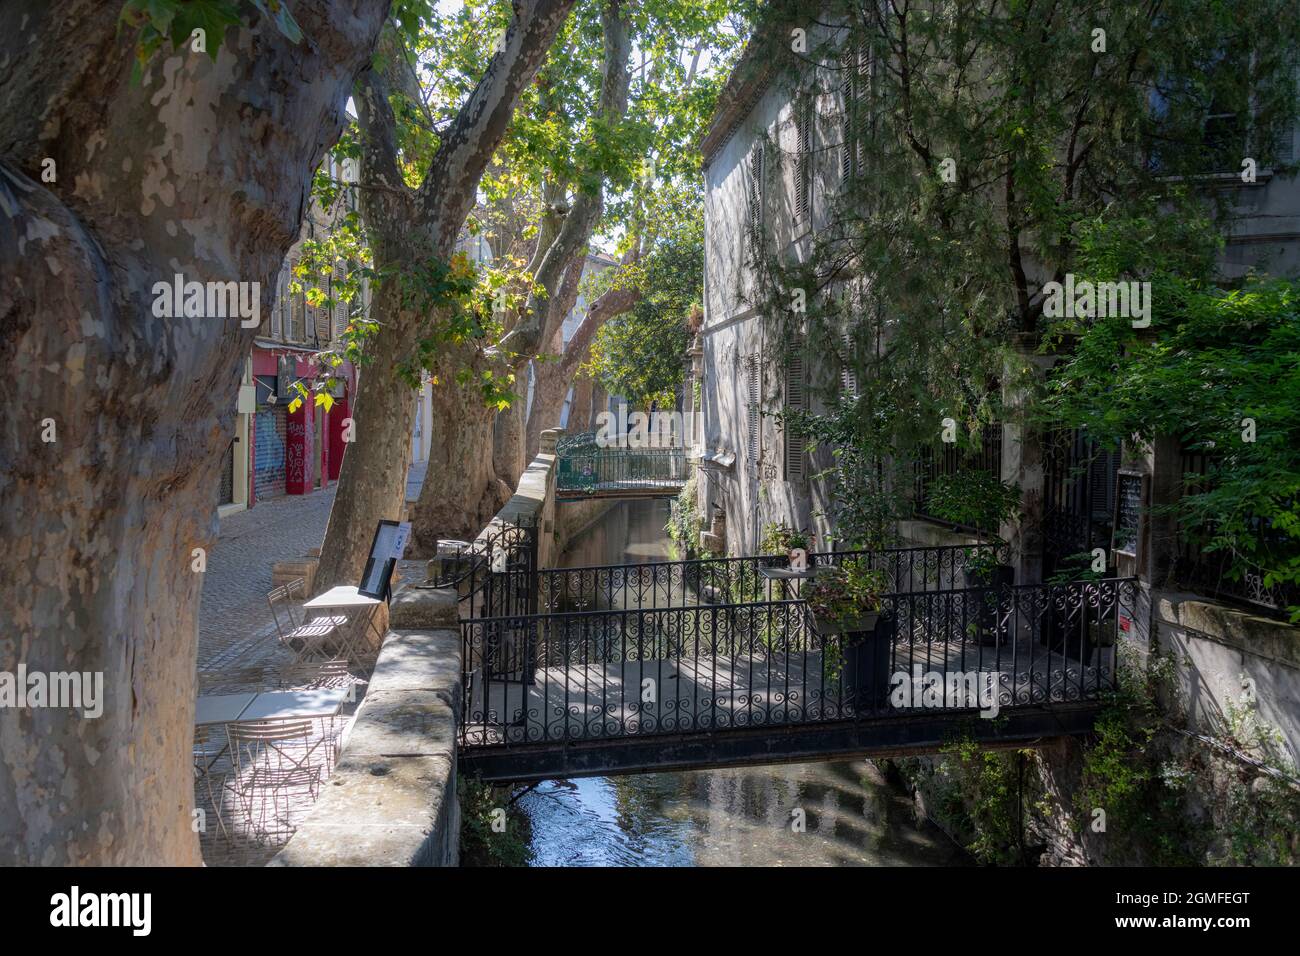 The Stone bridge and entrance to Restaurant Le Lieu, Rue des Teinturiers, Avignon, France. Stock Photo